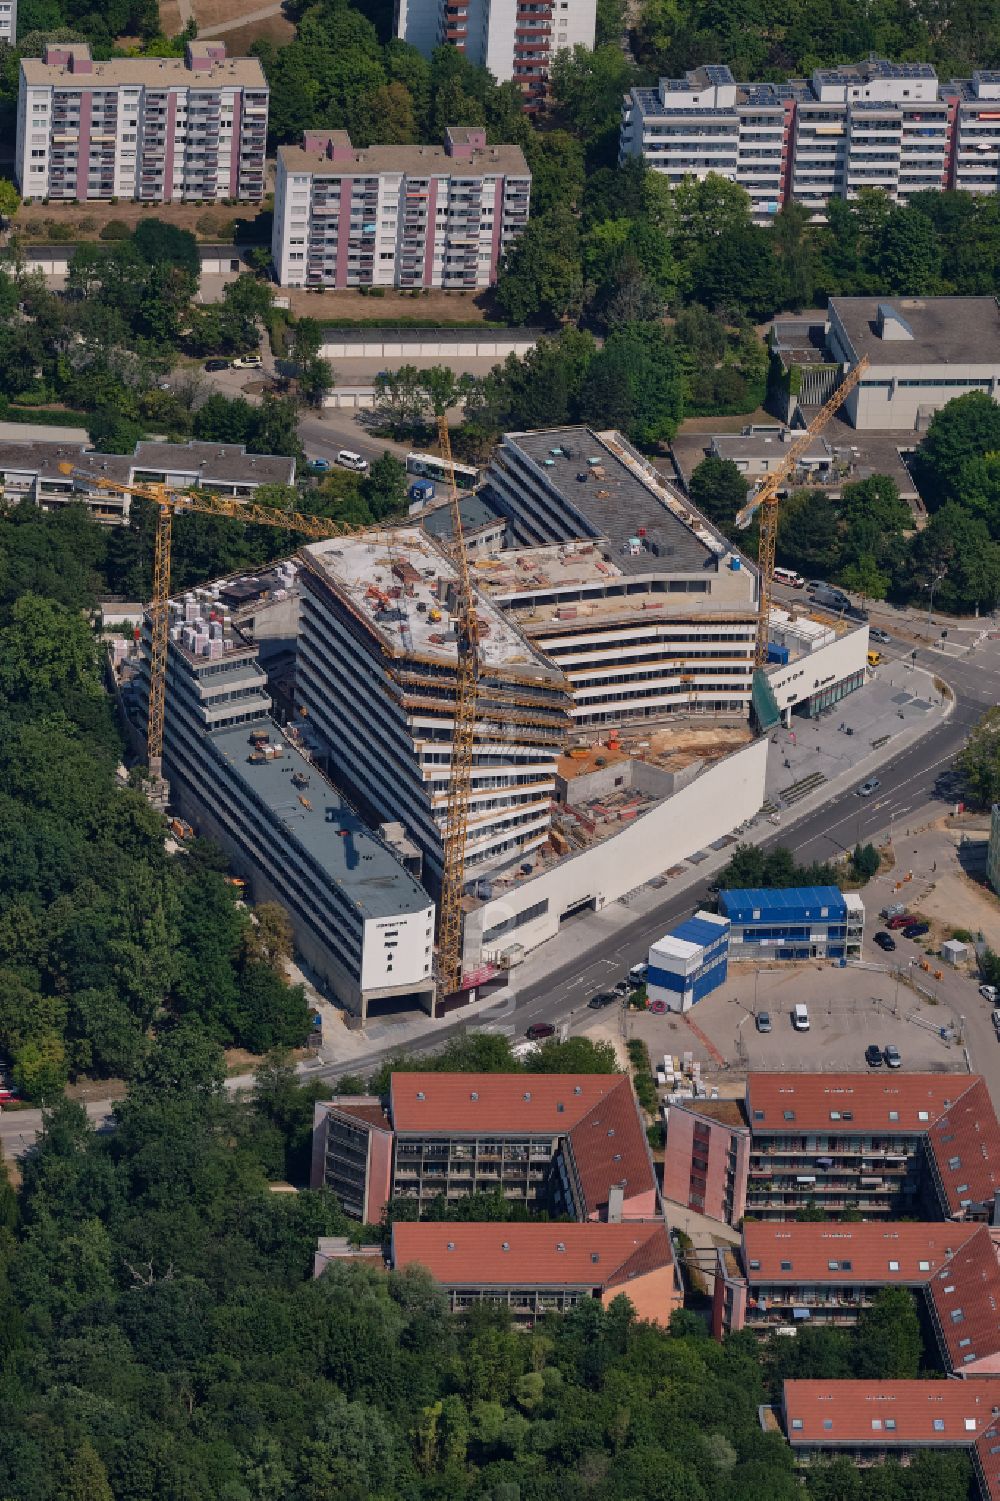 Luftbild Regensburg - Eckhaus- Baustelle zum Neubau eines Wohn- und Geschäftshauses Königstor in Regensburg im Bundesland Bayern, Deutschland